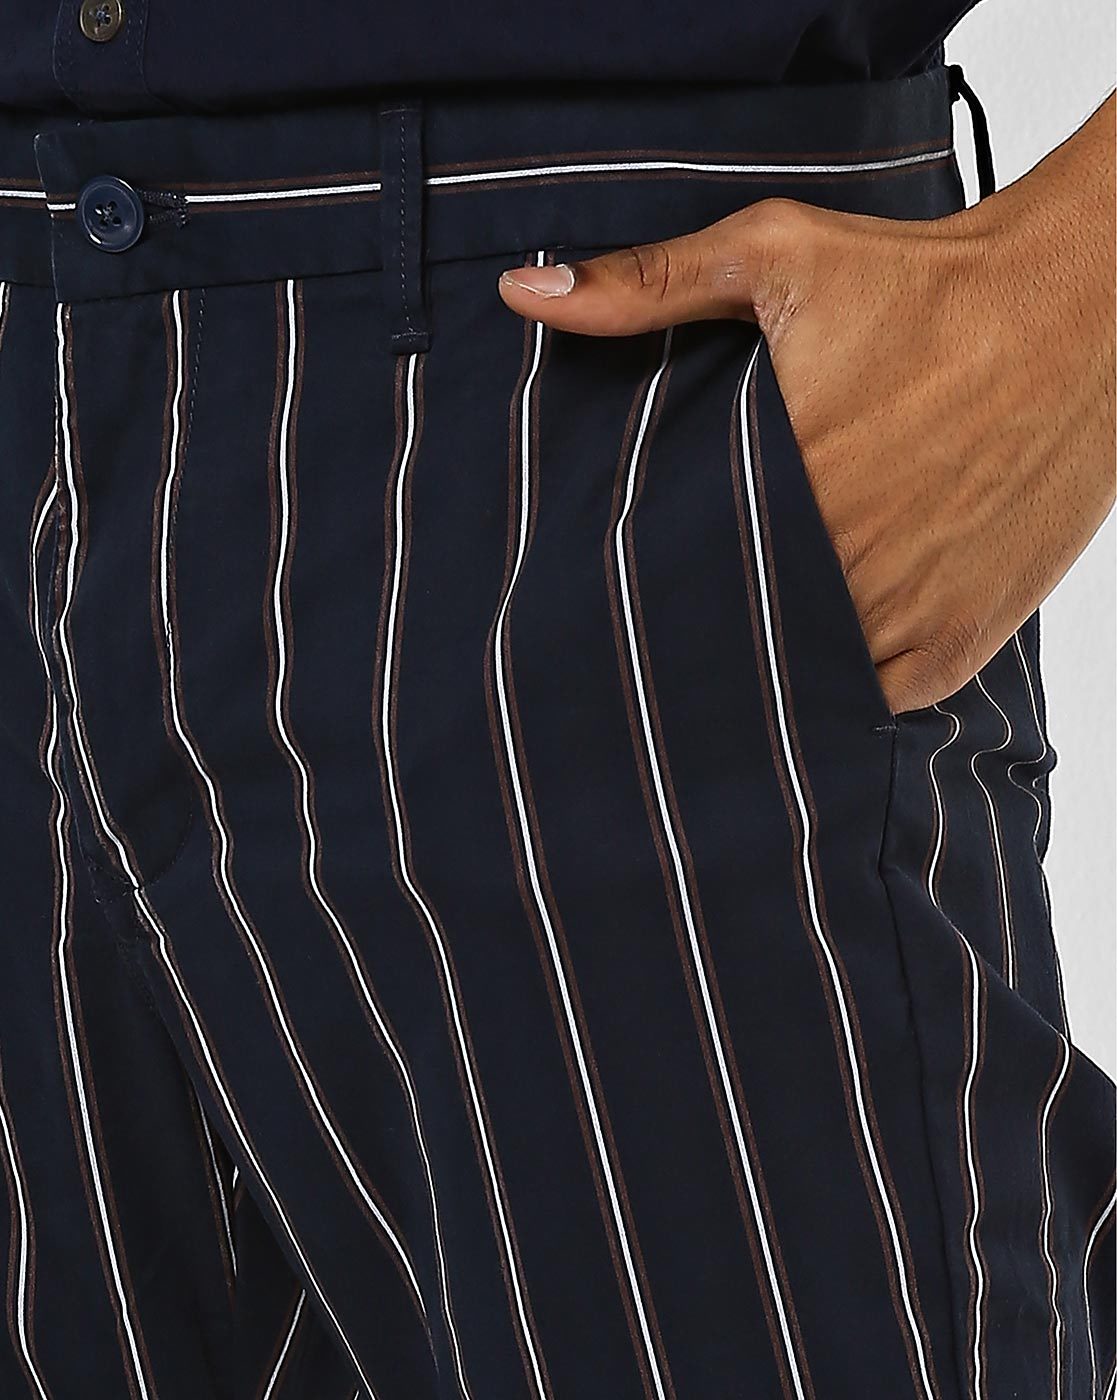 Striped Mens Trousers  Buy Striped Mens Trousers Online at Best Prices In  India  Flipkartcom